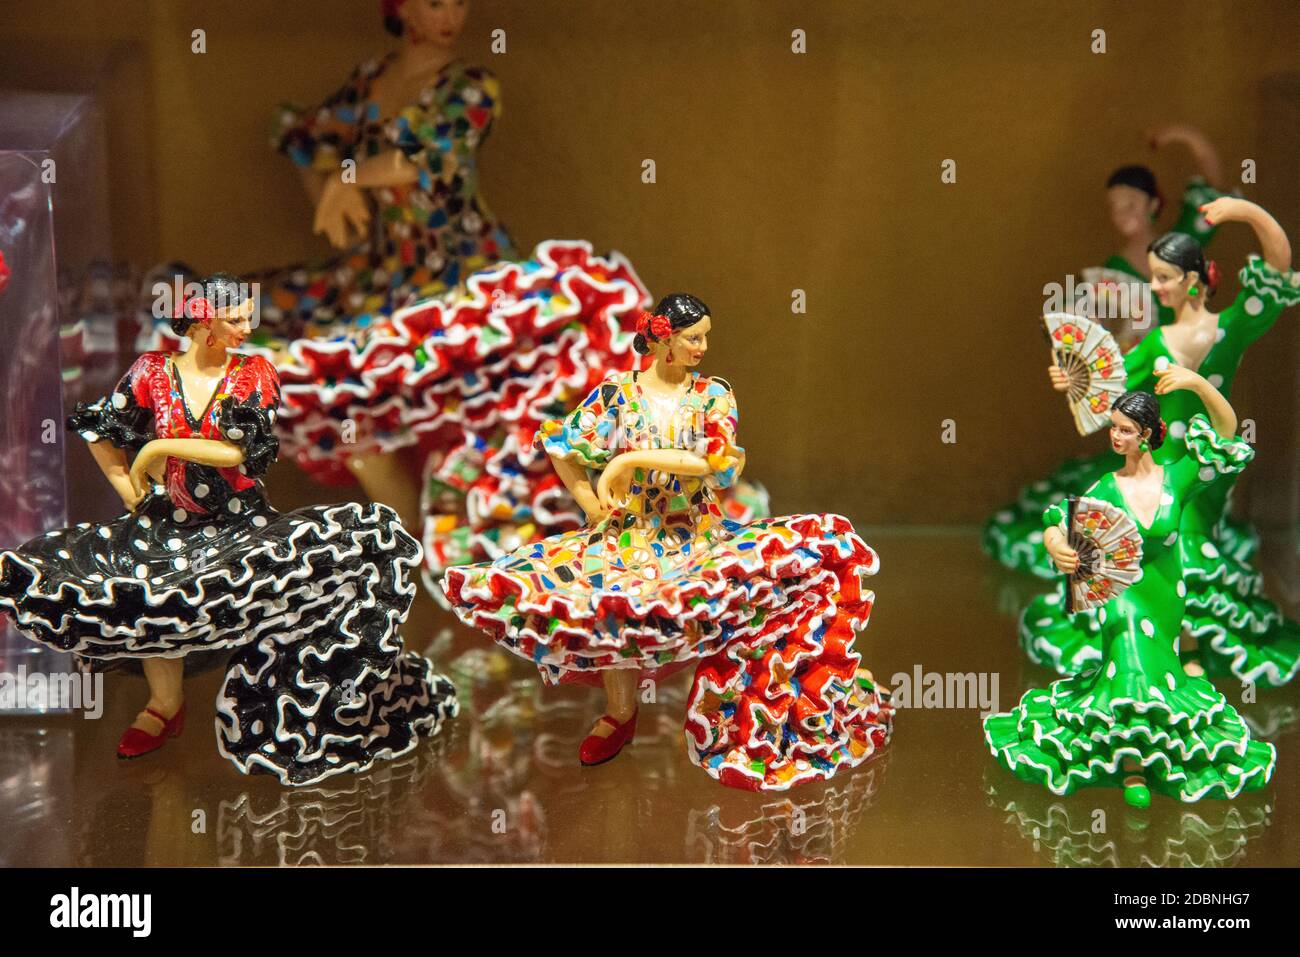 Danseurs espagnols dans la boutique de souvenirs de Cordoue, Espagne Banque D'Images